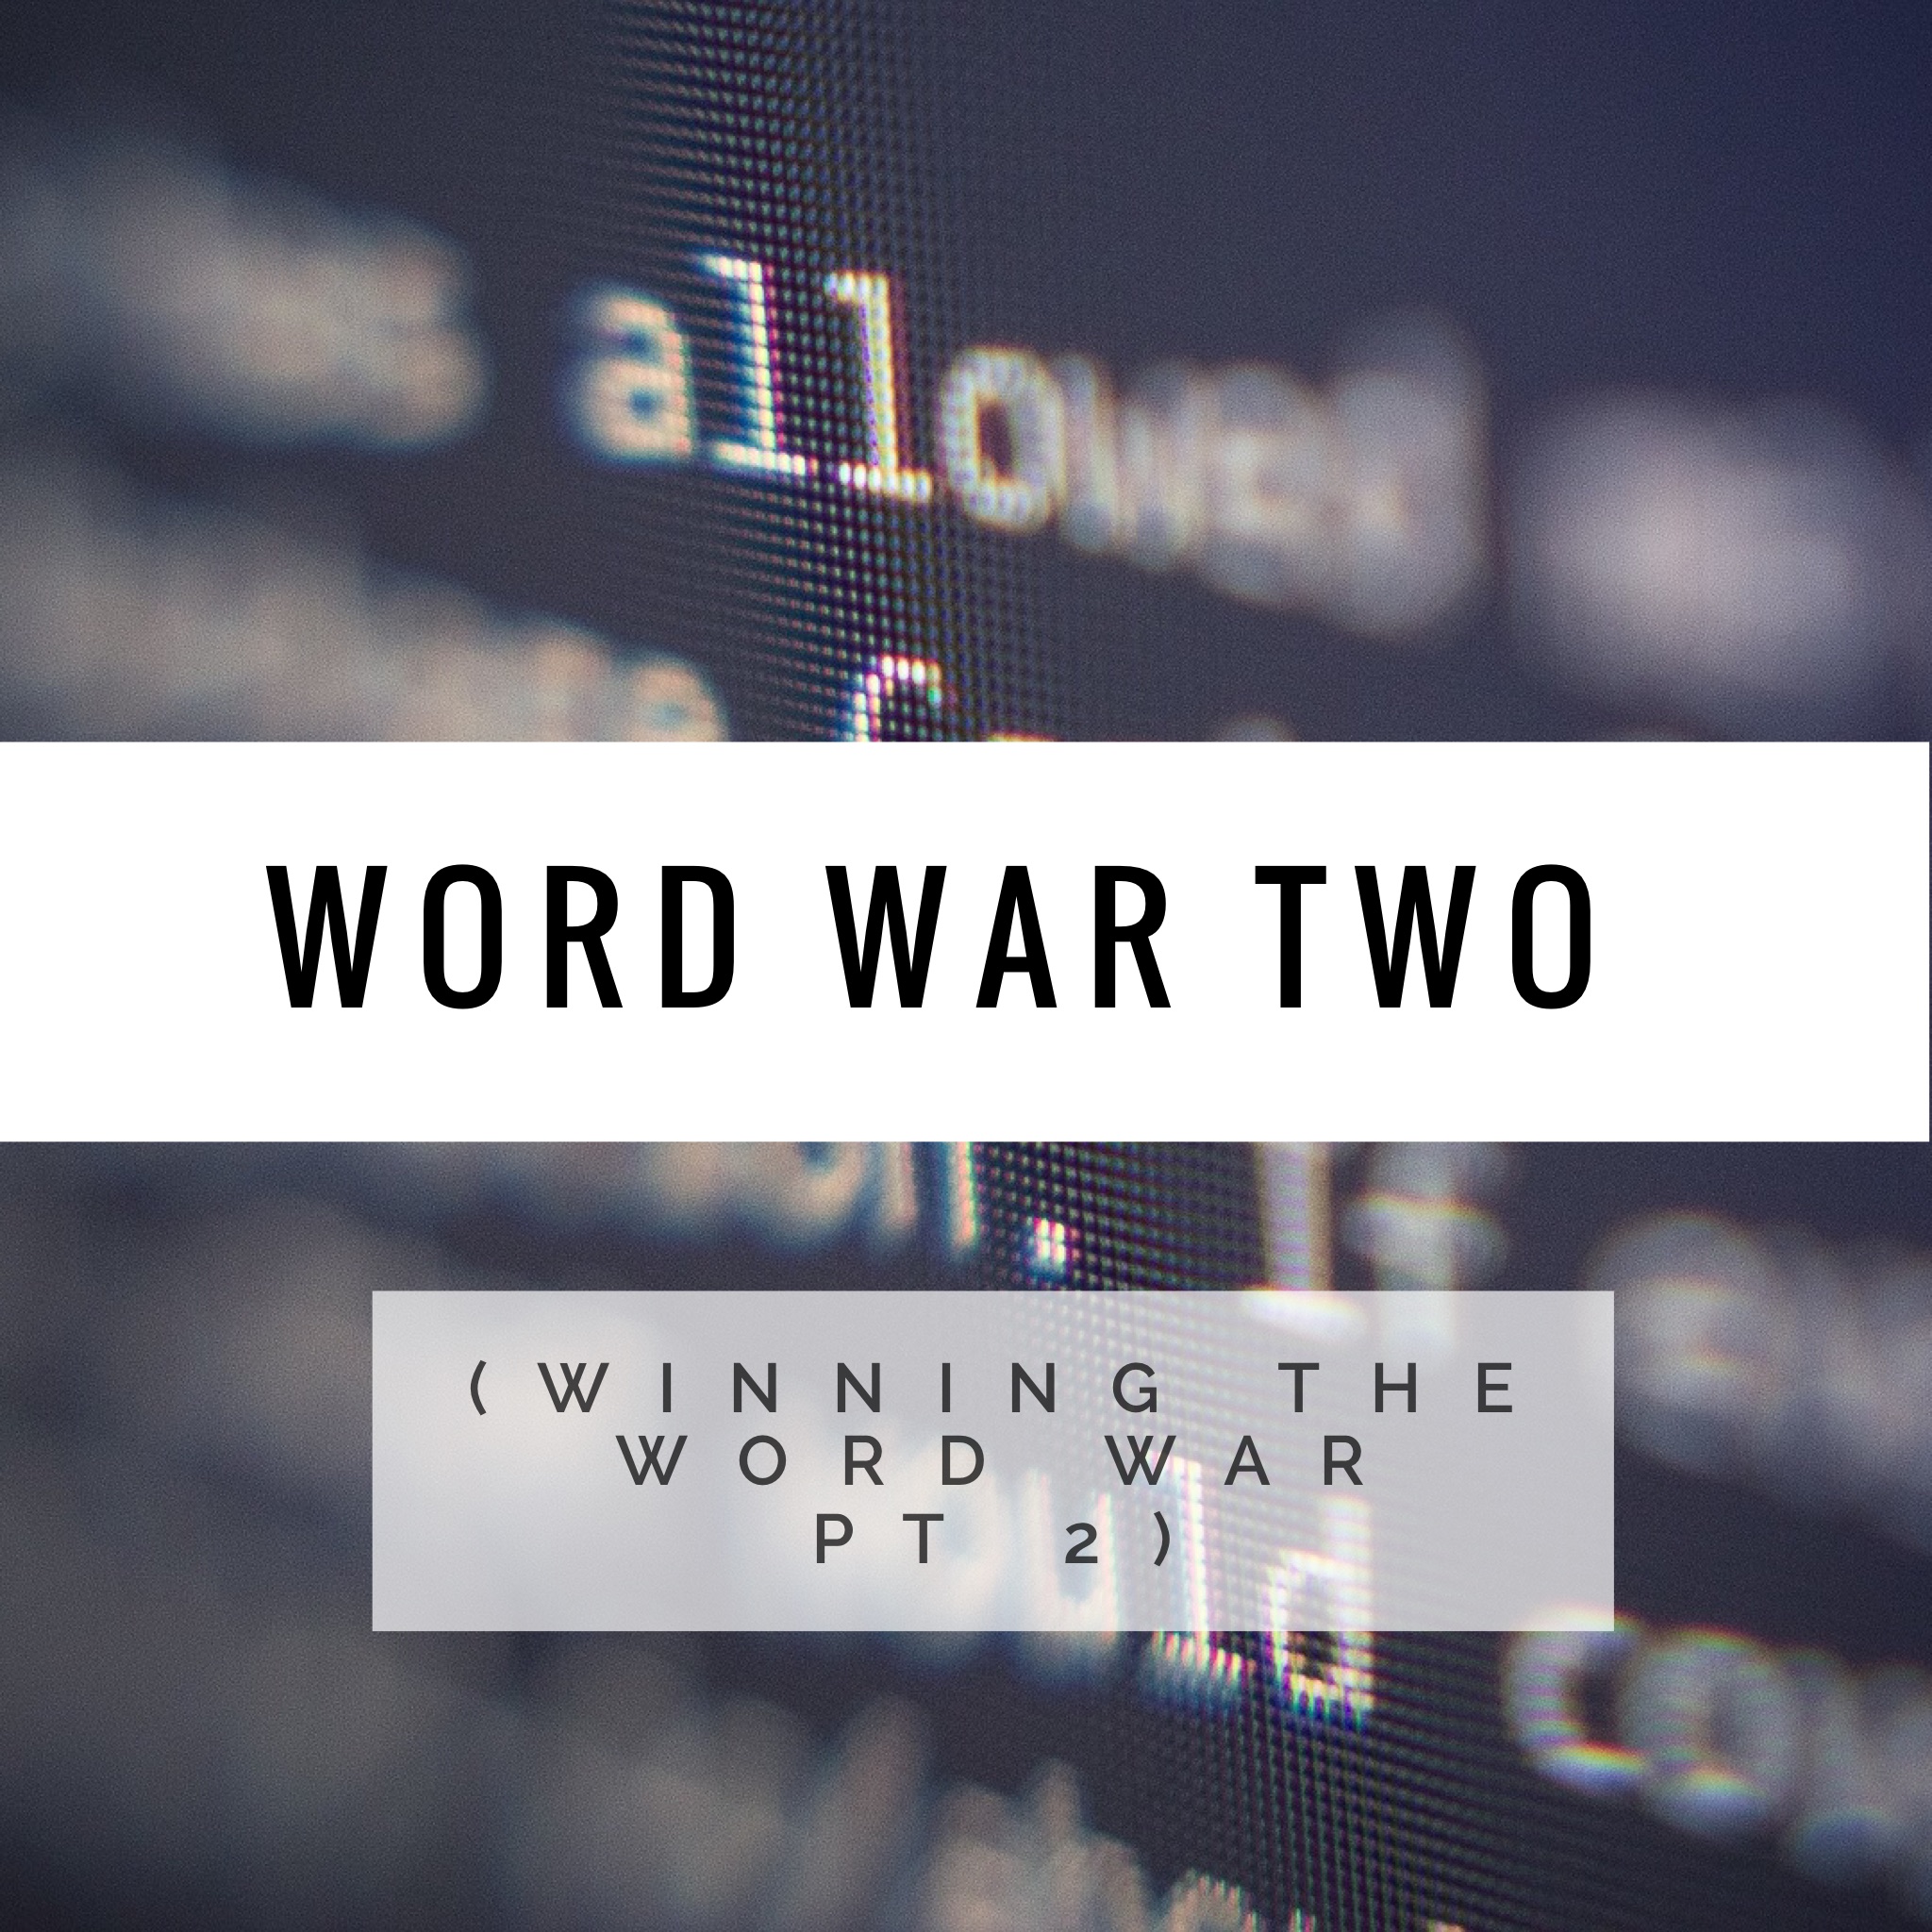 War War Two (Winning the Word War Pt 2)